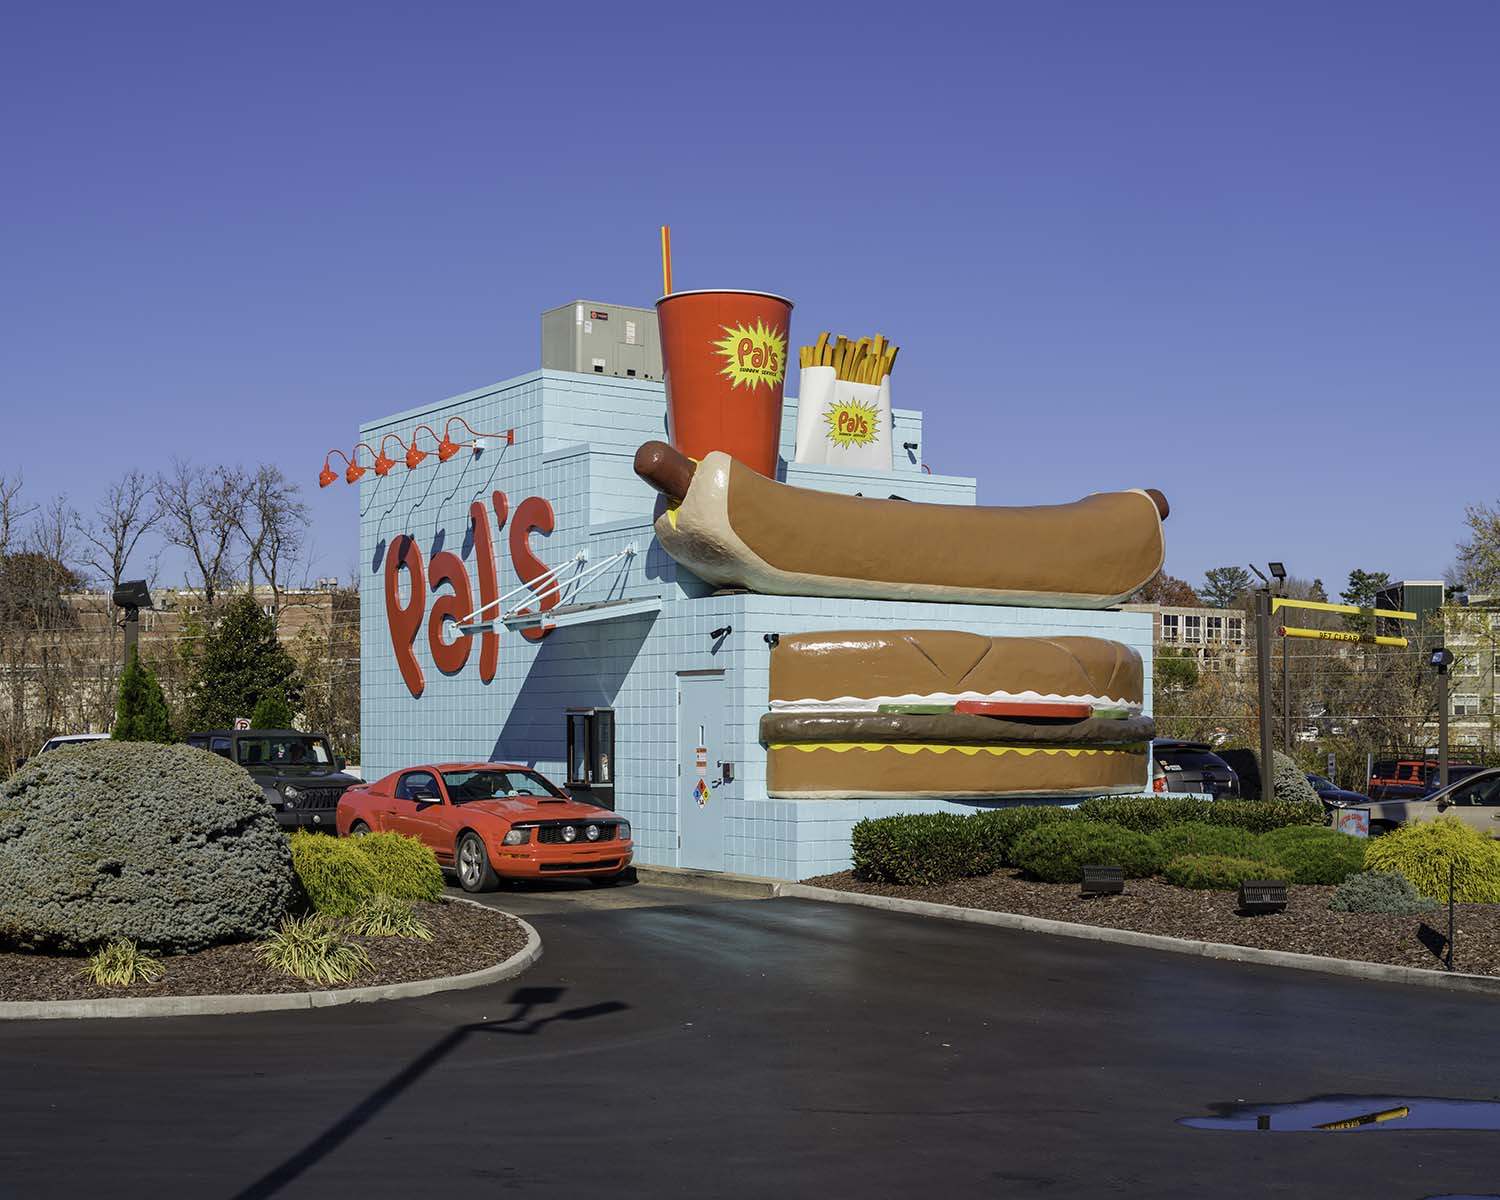 Pal’s Sudden Service Drive Through Burger Restaurant Tennessee, USA, 2022